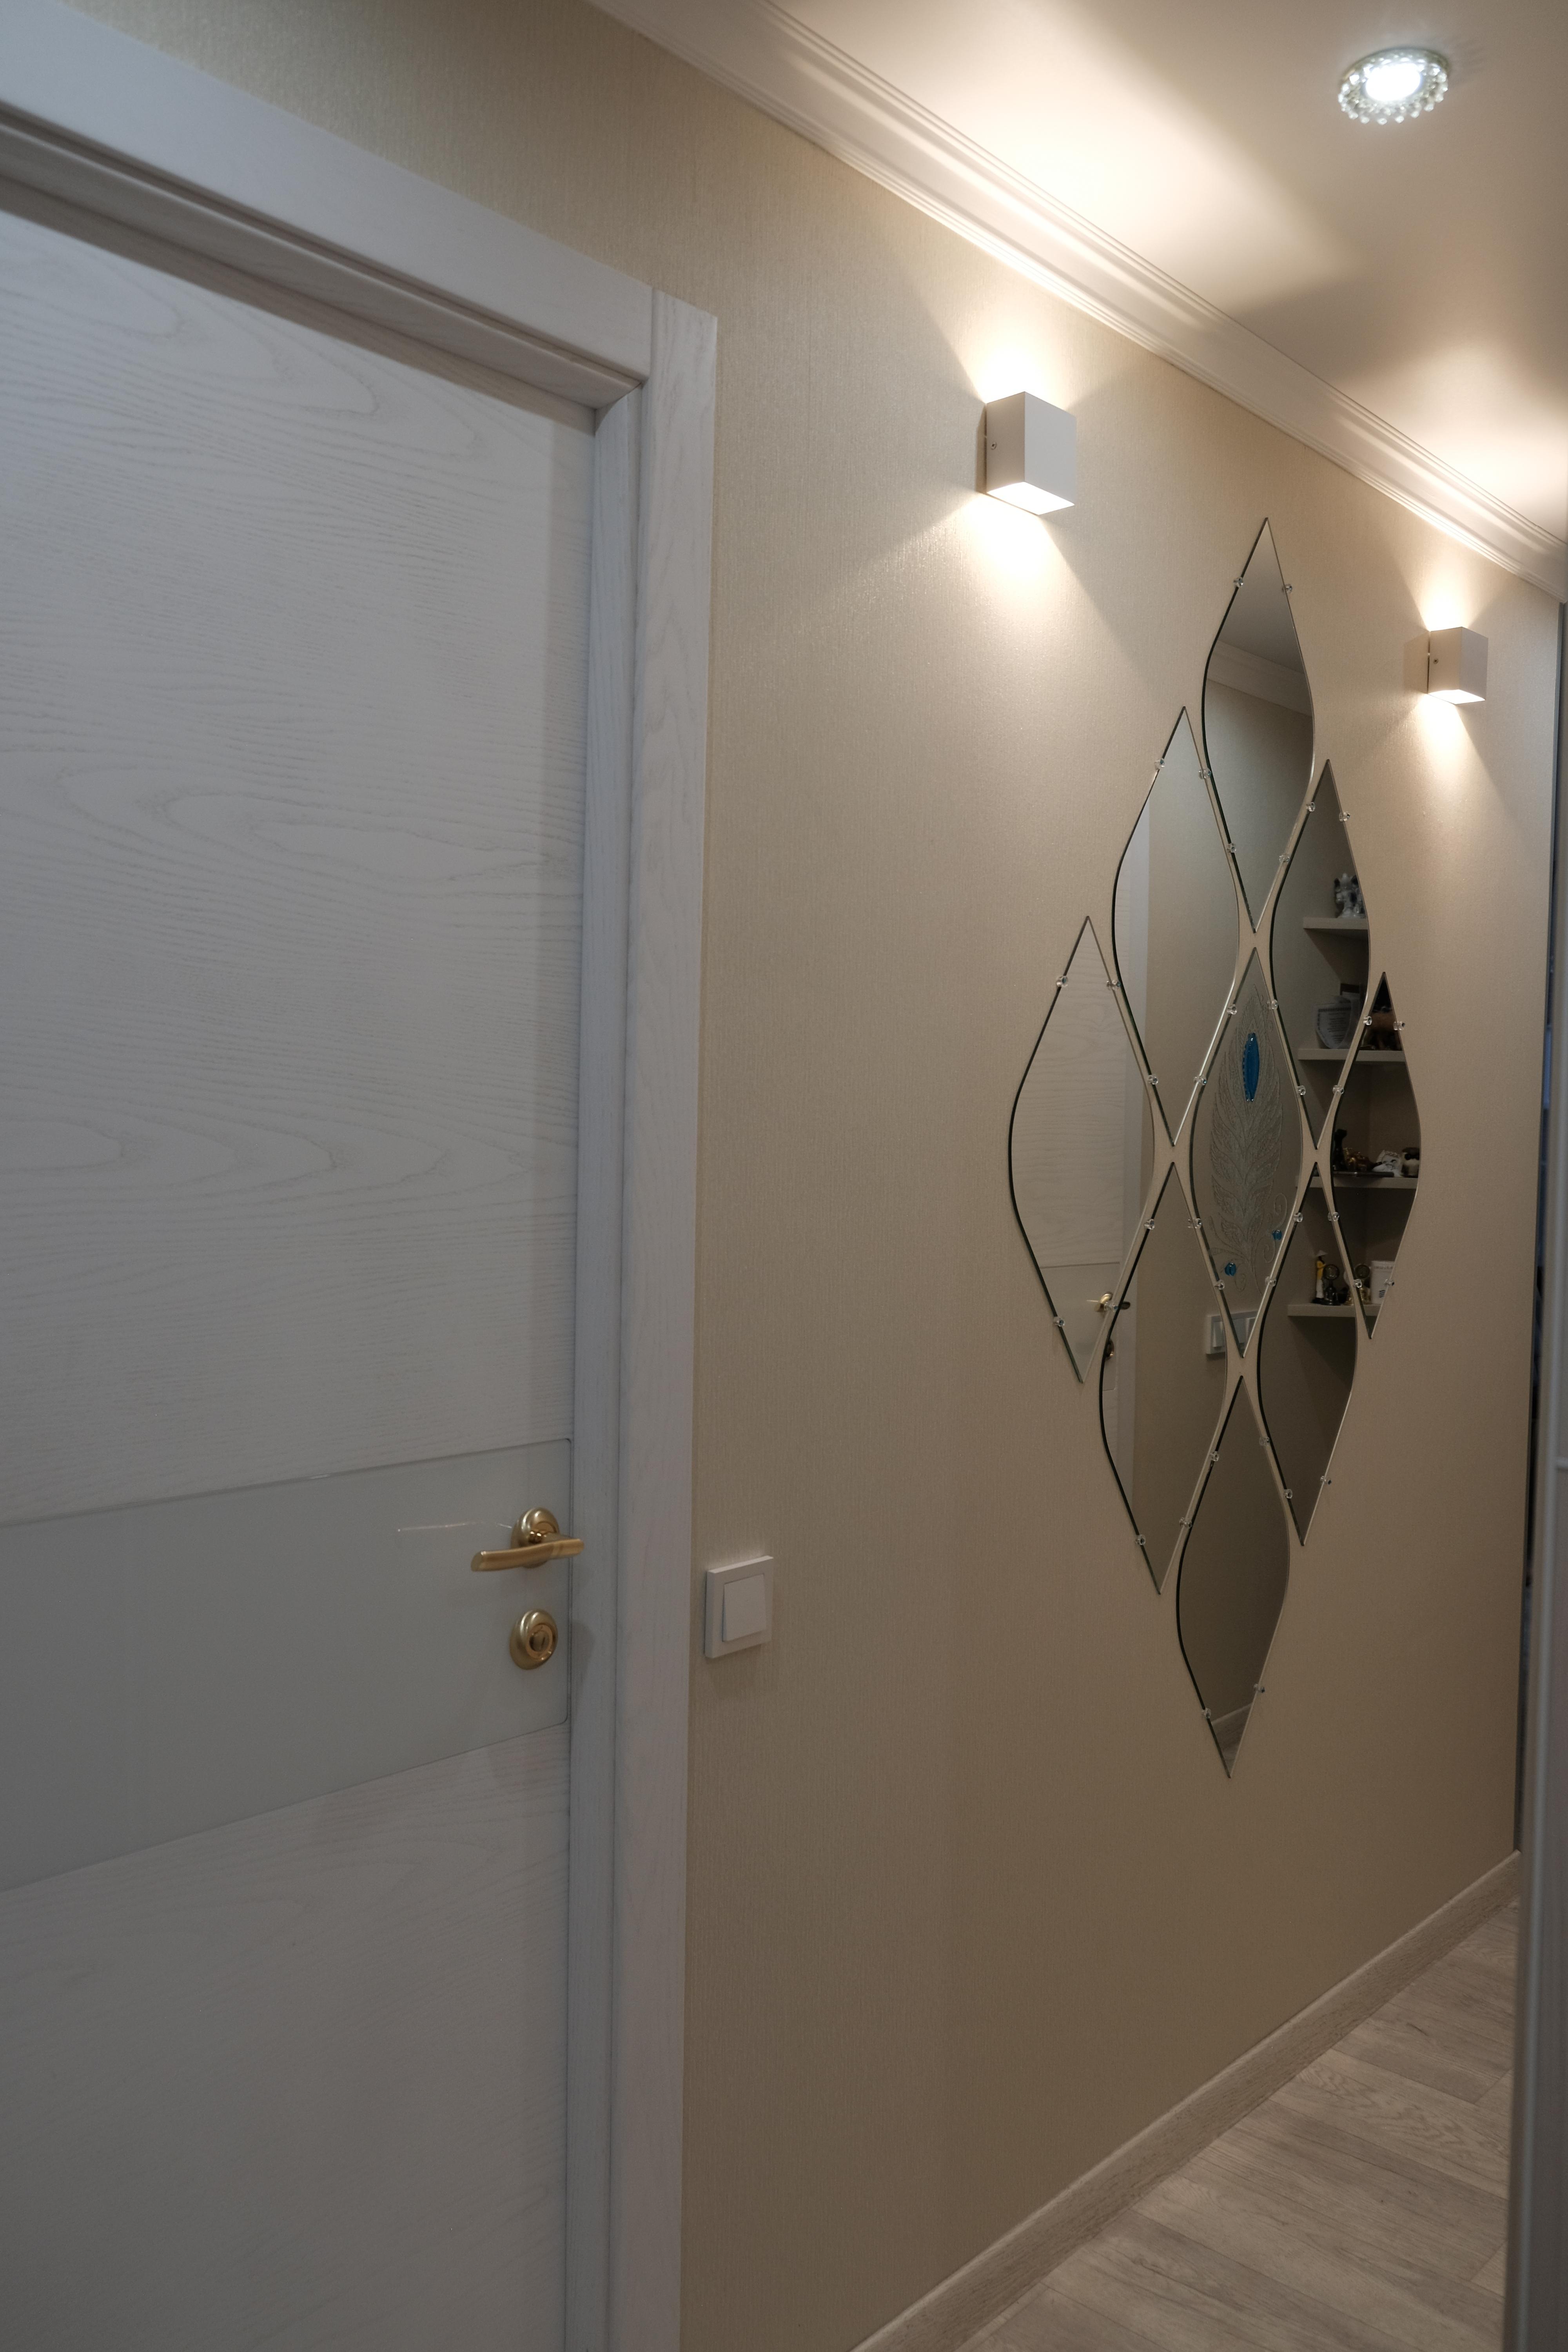 Интерьер коридора с проходной, зеркалом на двери, подсветкой настенной и подсветкой светодиодной